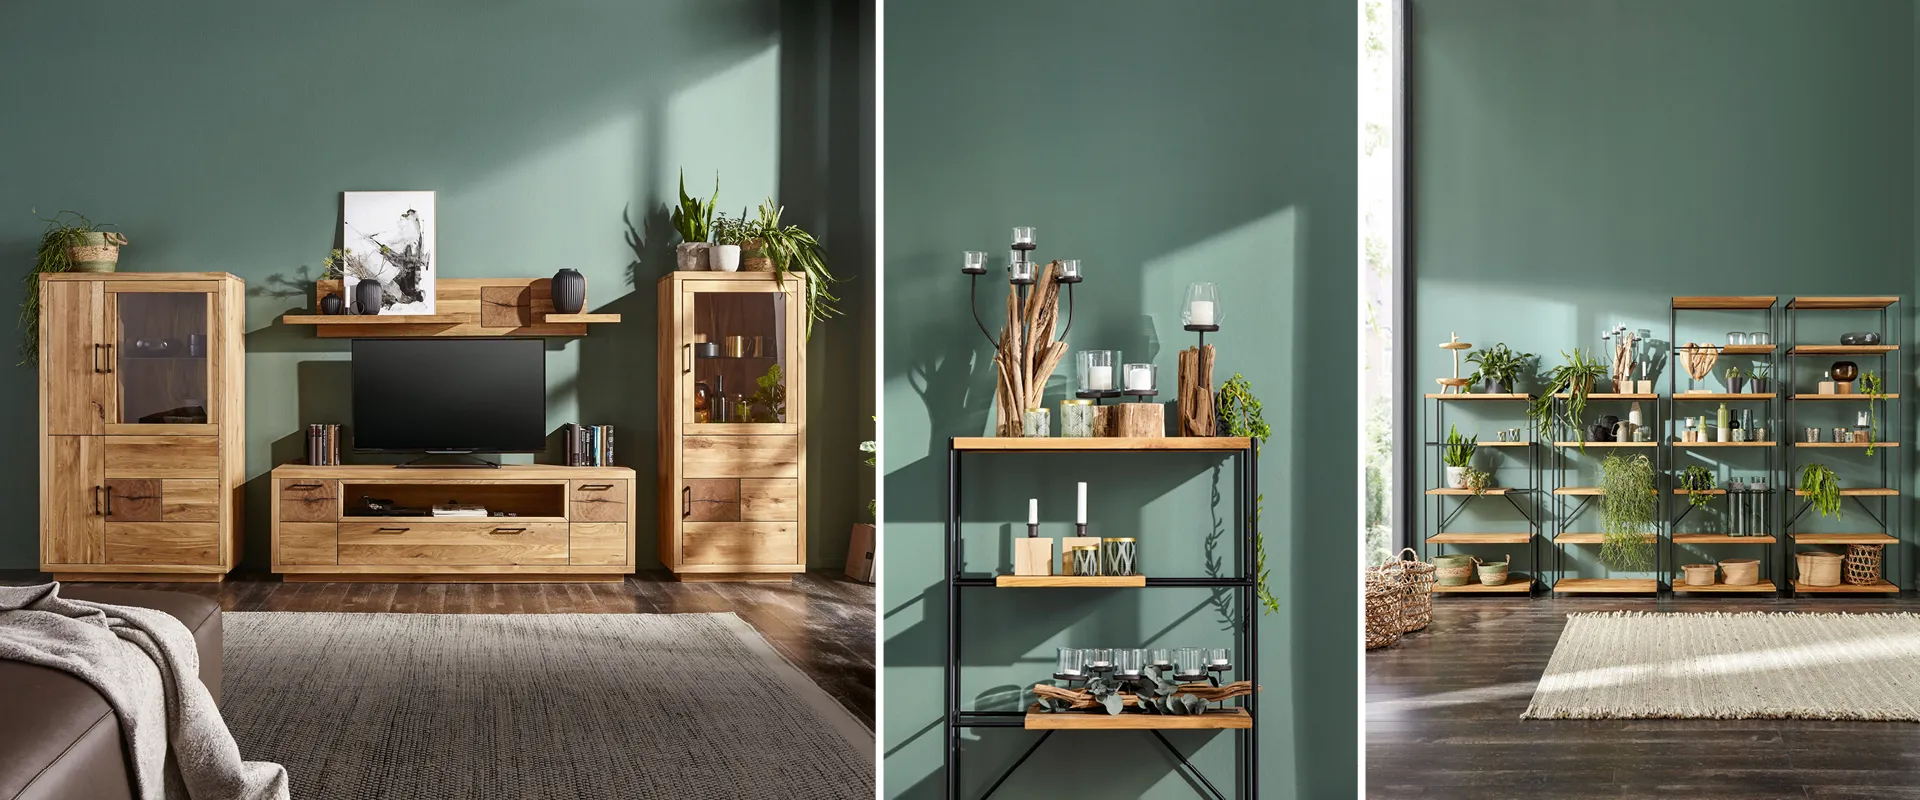 NATURA HOME Möbel fürs Wohnzimmer: Wohnwand und Regale aus Massivholz mit schönen Glasapplikationen und Metallelementen